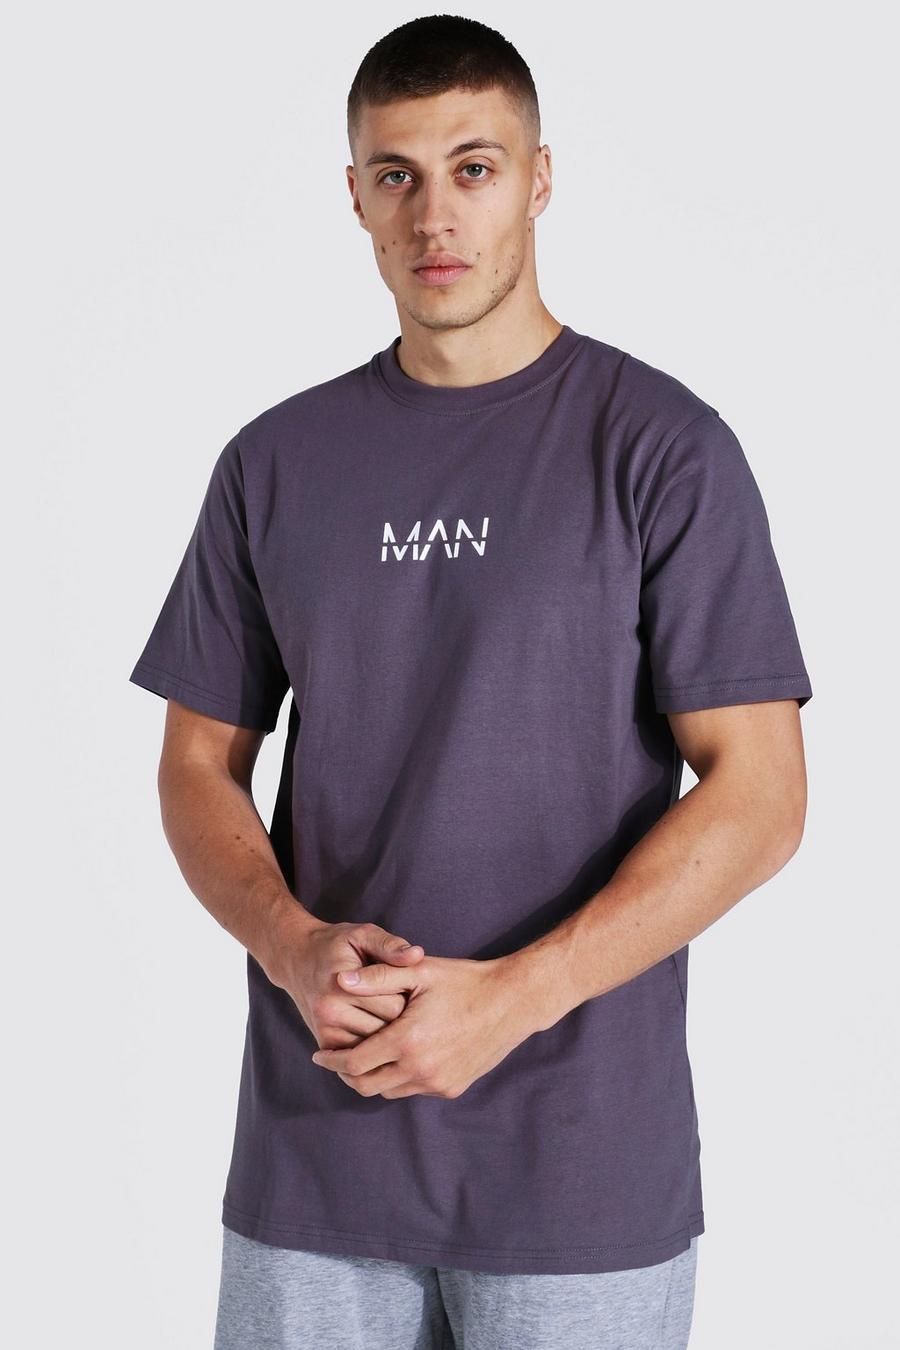 T-shirt lunga Original Man, Charcoal image number 1